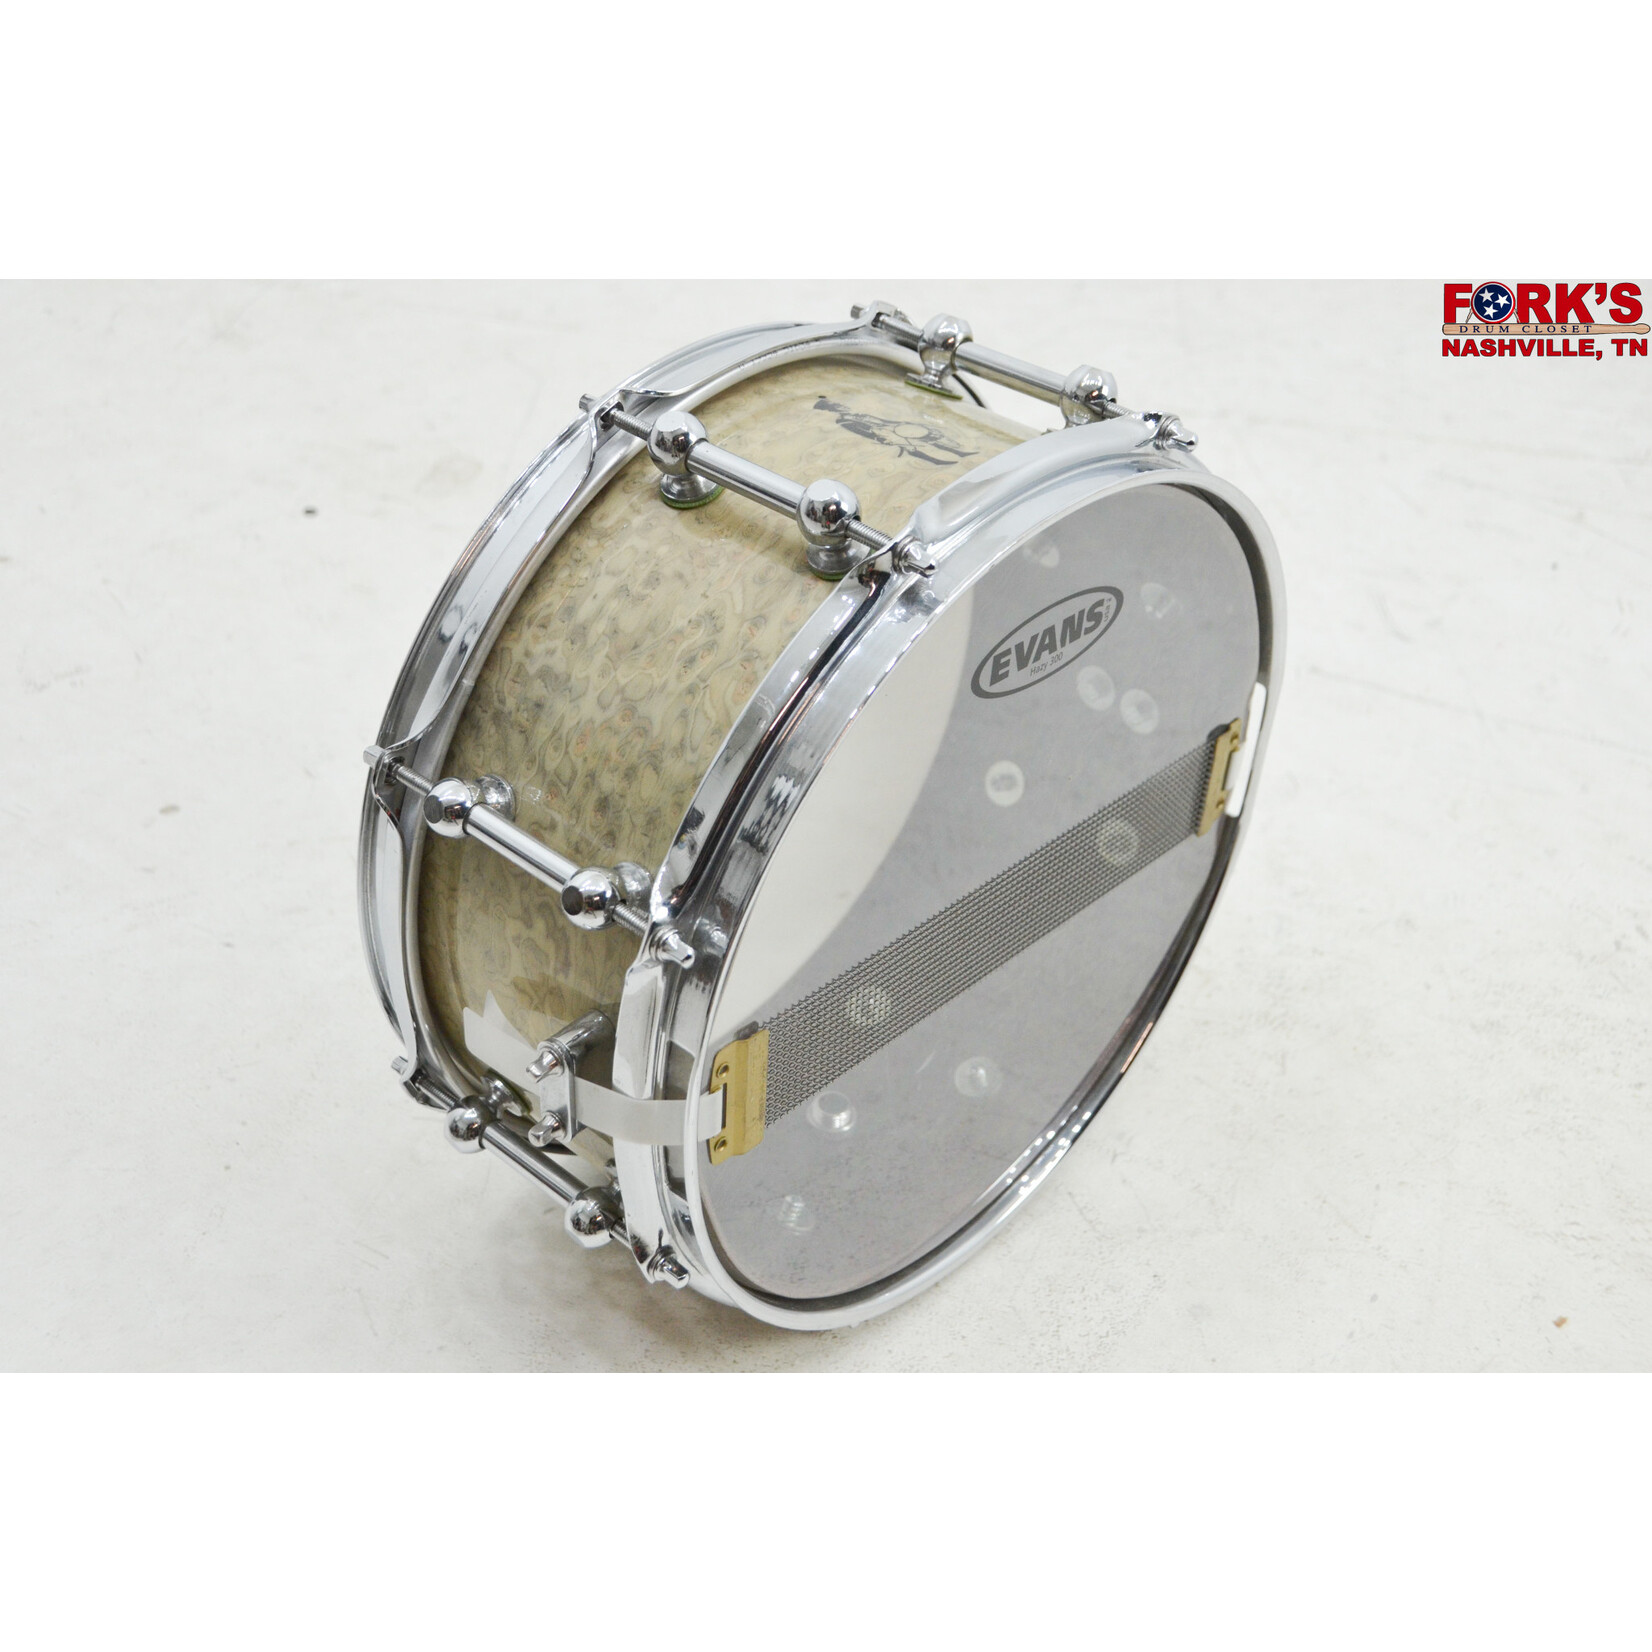 Brady Brady 5x12 Jarrah Ply Snare Drum - "Silver Gimlet"